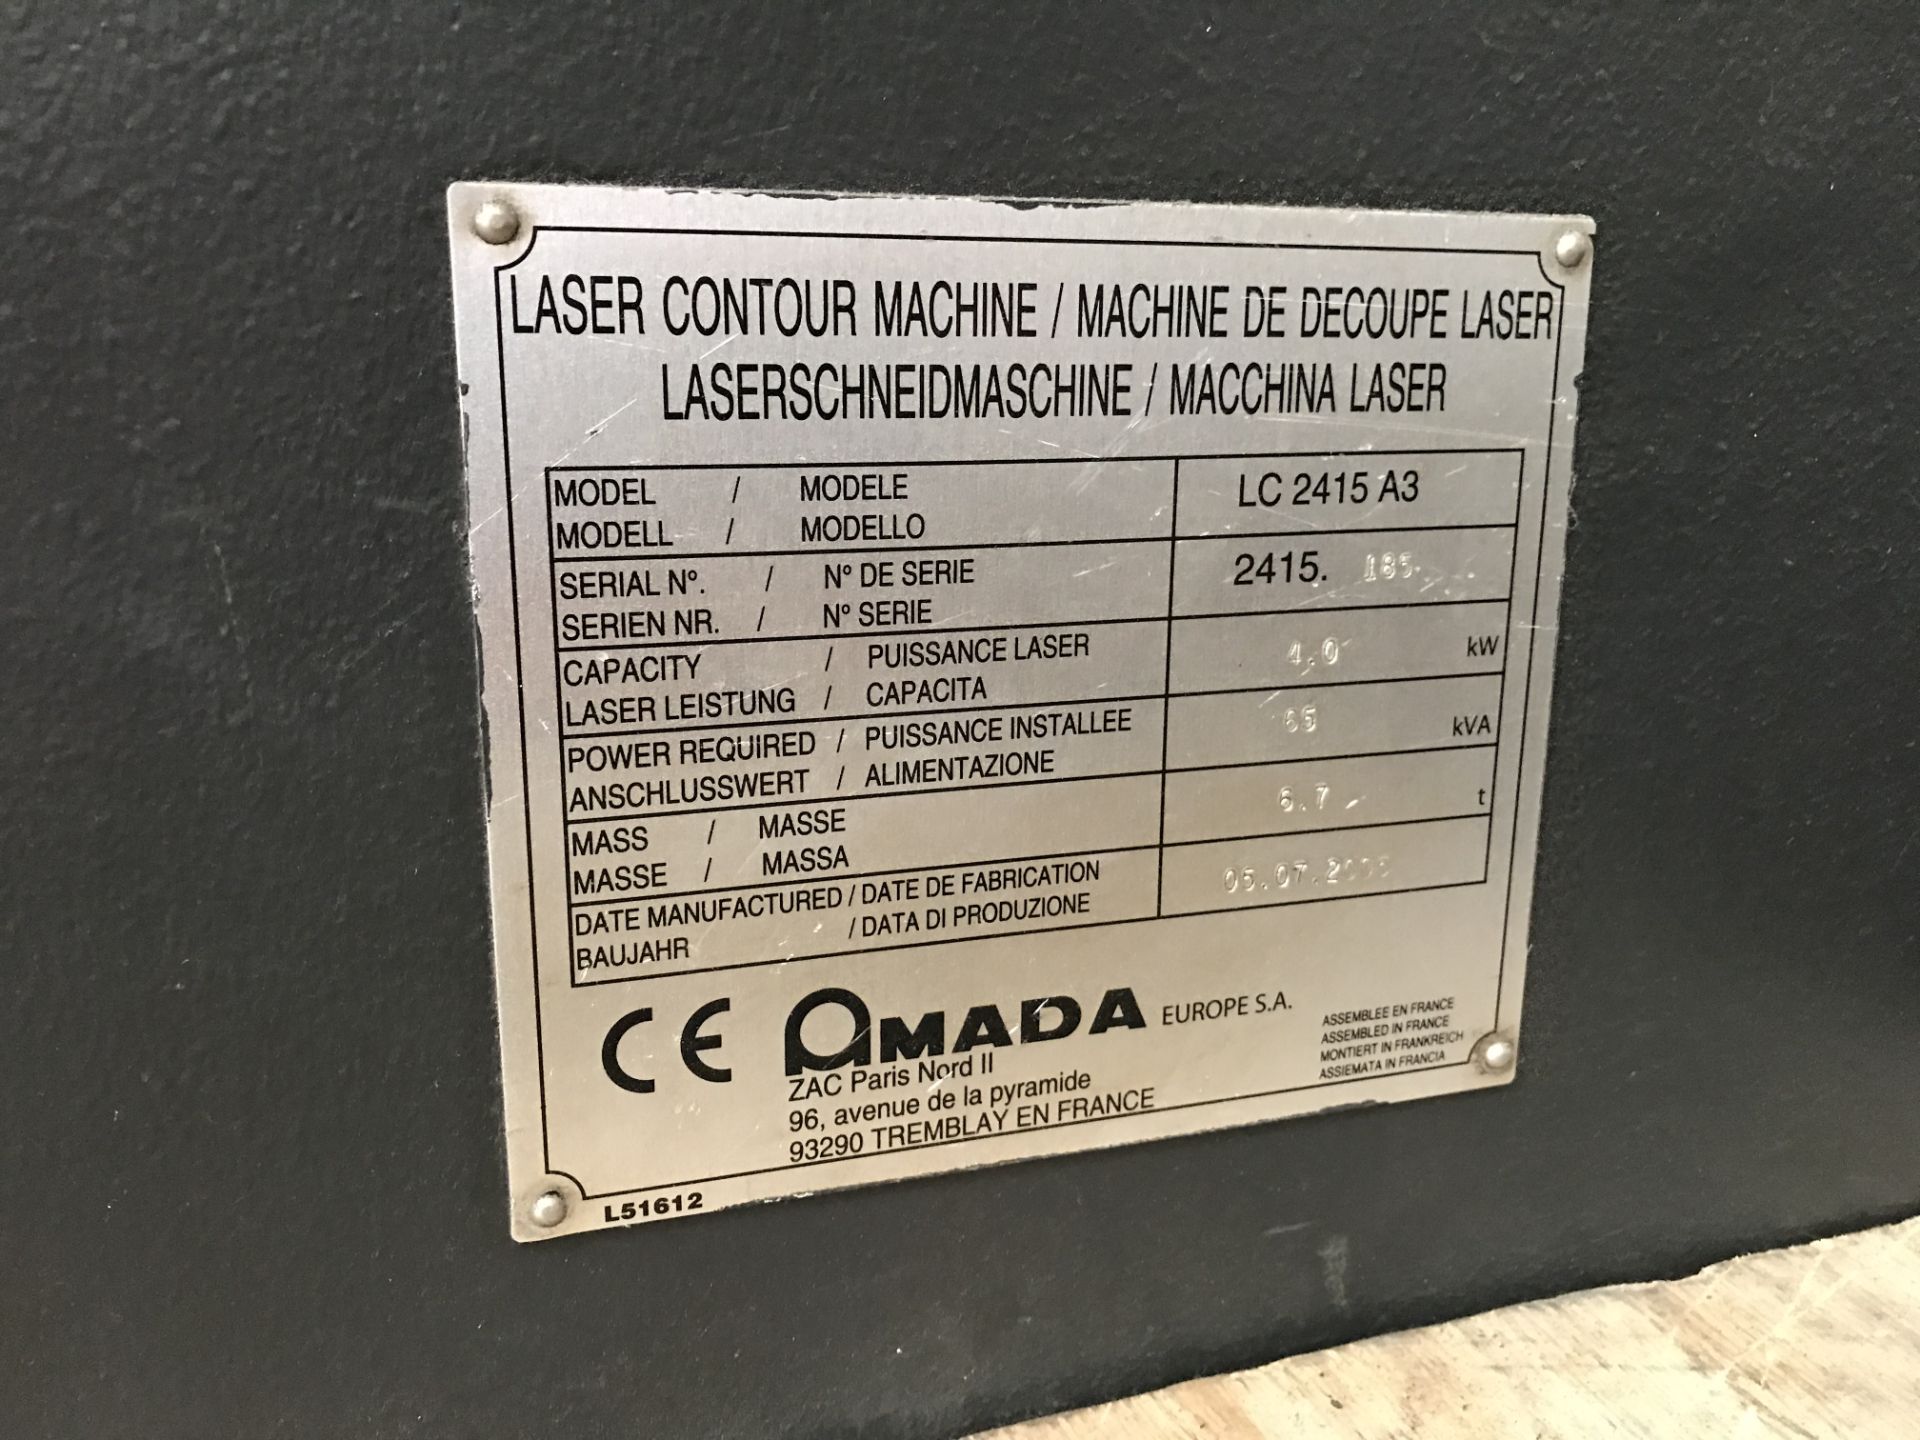 Amada C4000 Lasmac LC-2415 CX III CNC Laser Machin - Image 7 of 9